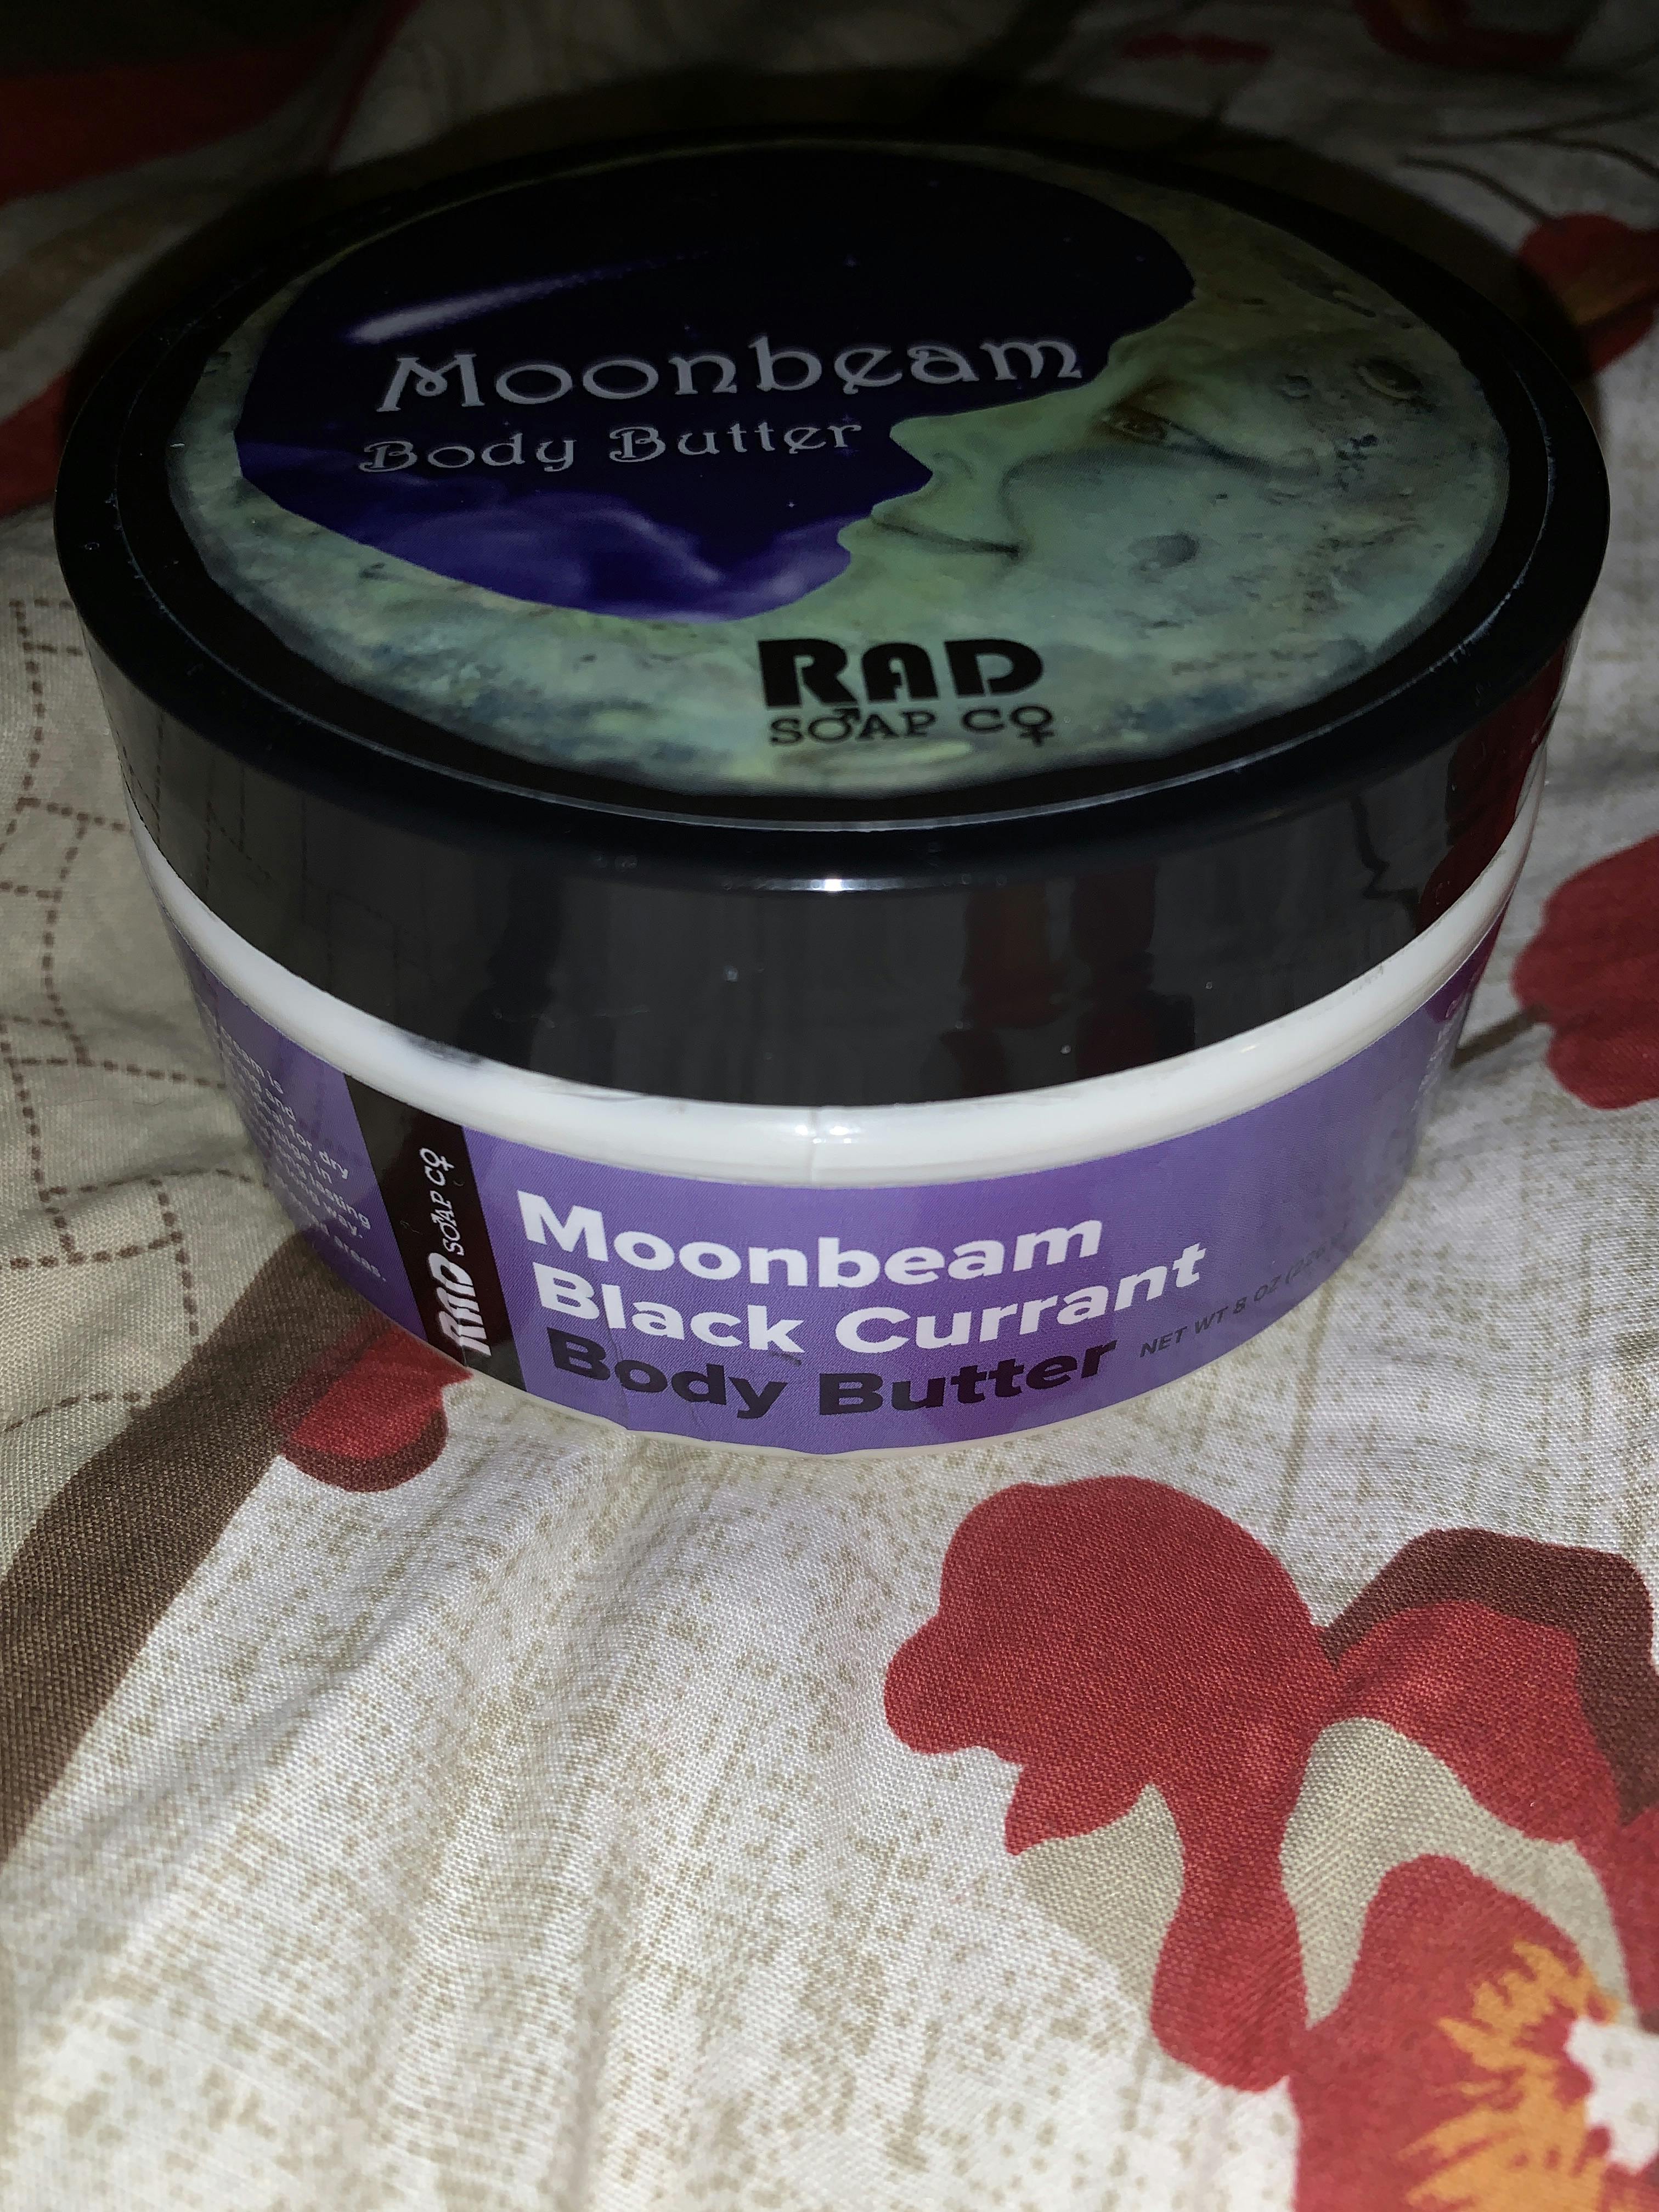 moonrock rad soap